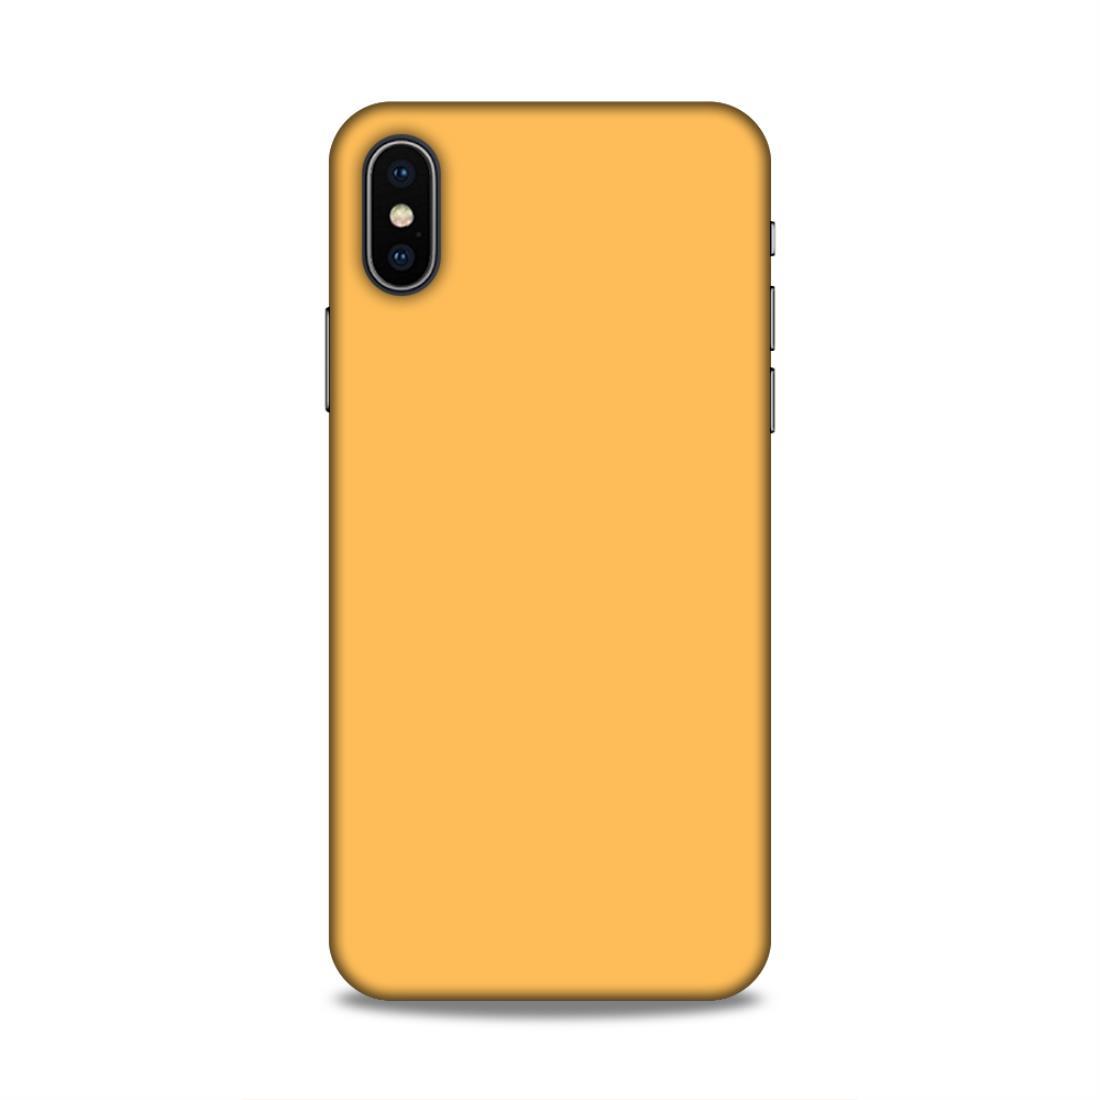 Peach Classic Plain iPhone X Phone Cover Case